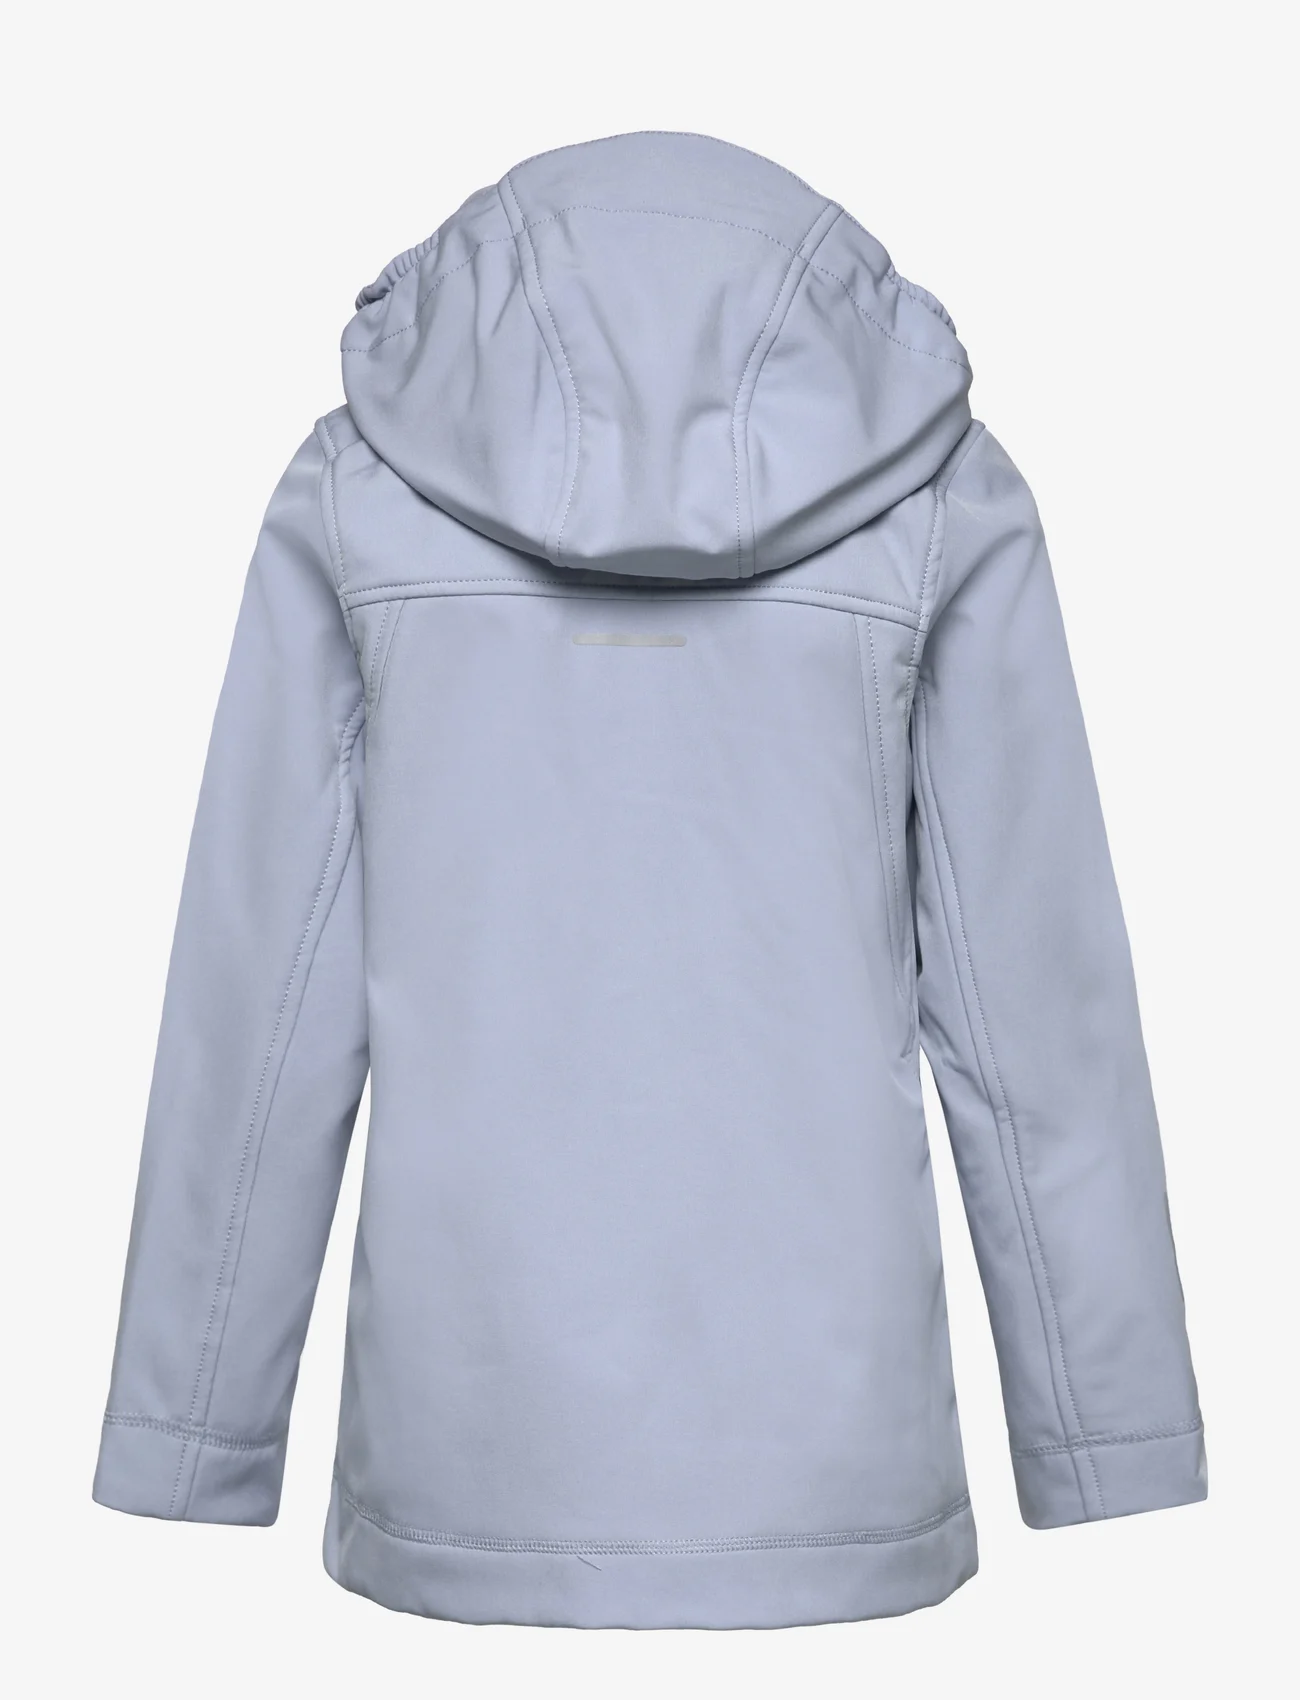 Reima - Softshell jacket, Espoo - kinder - foggy blue - 1